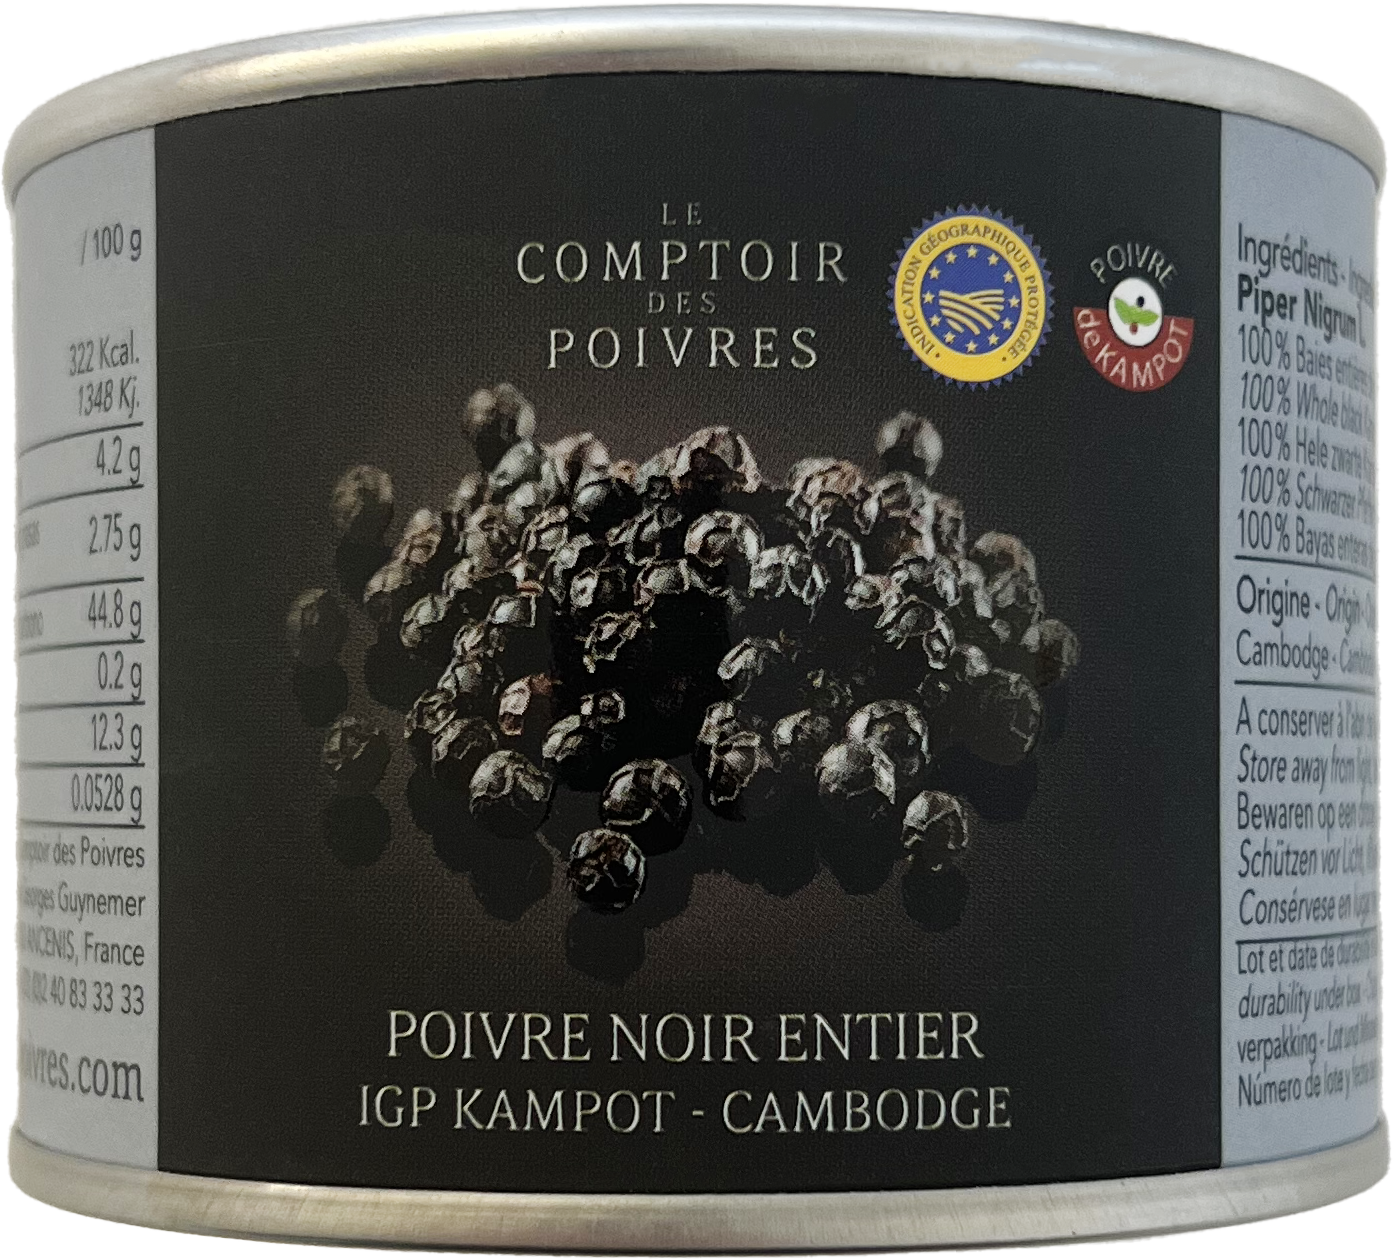 Poivre rouge en grains de Kampot - 40 g